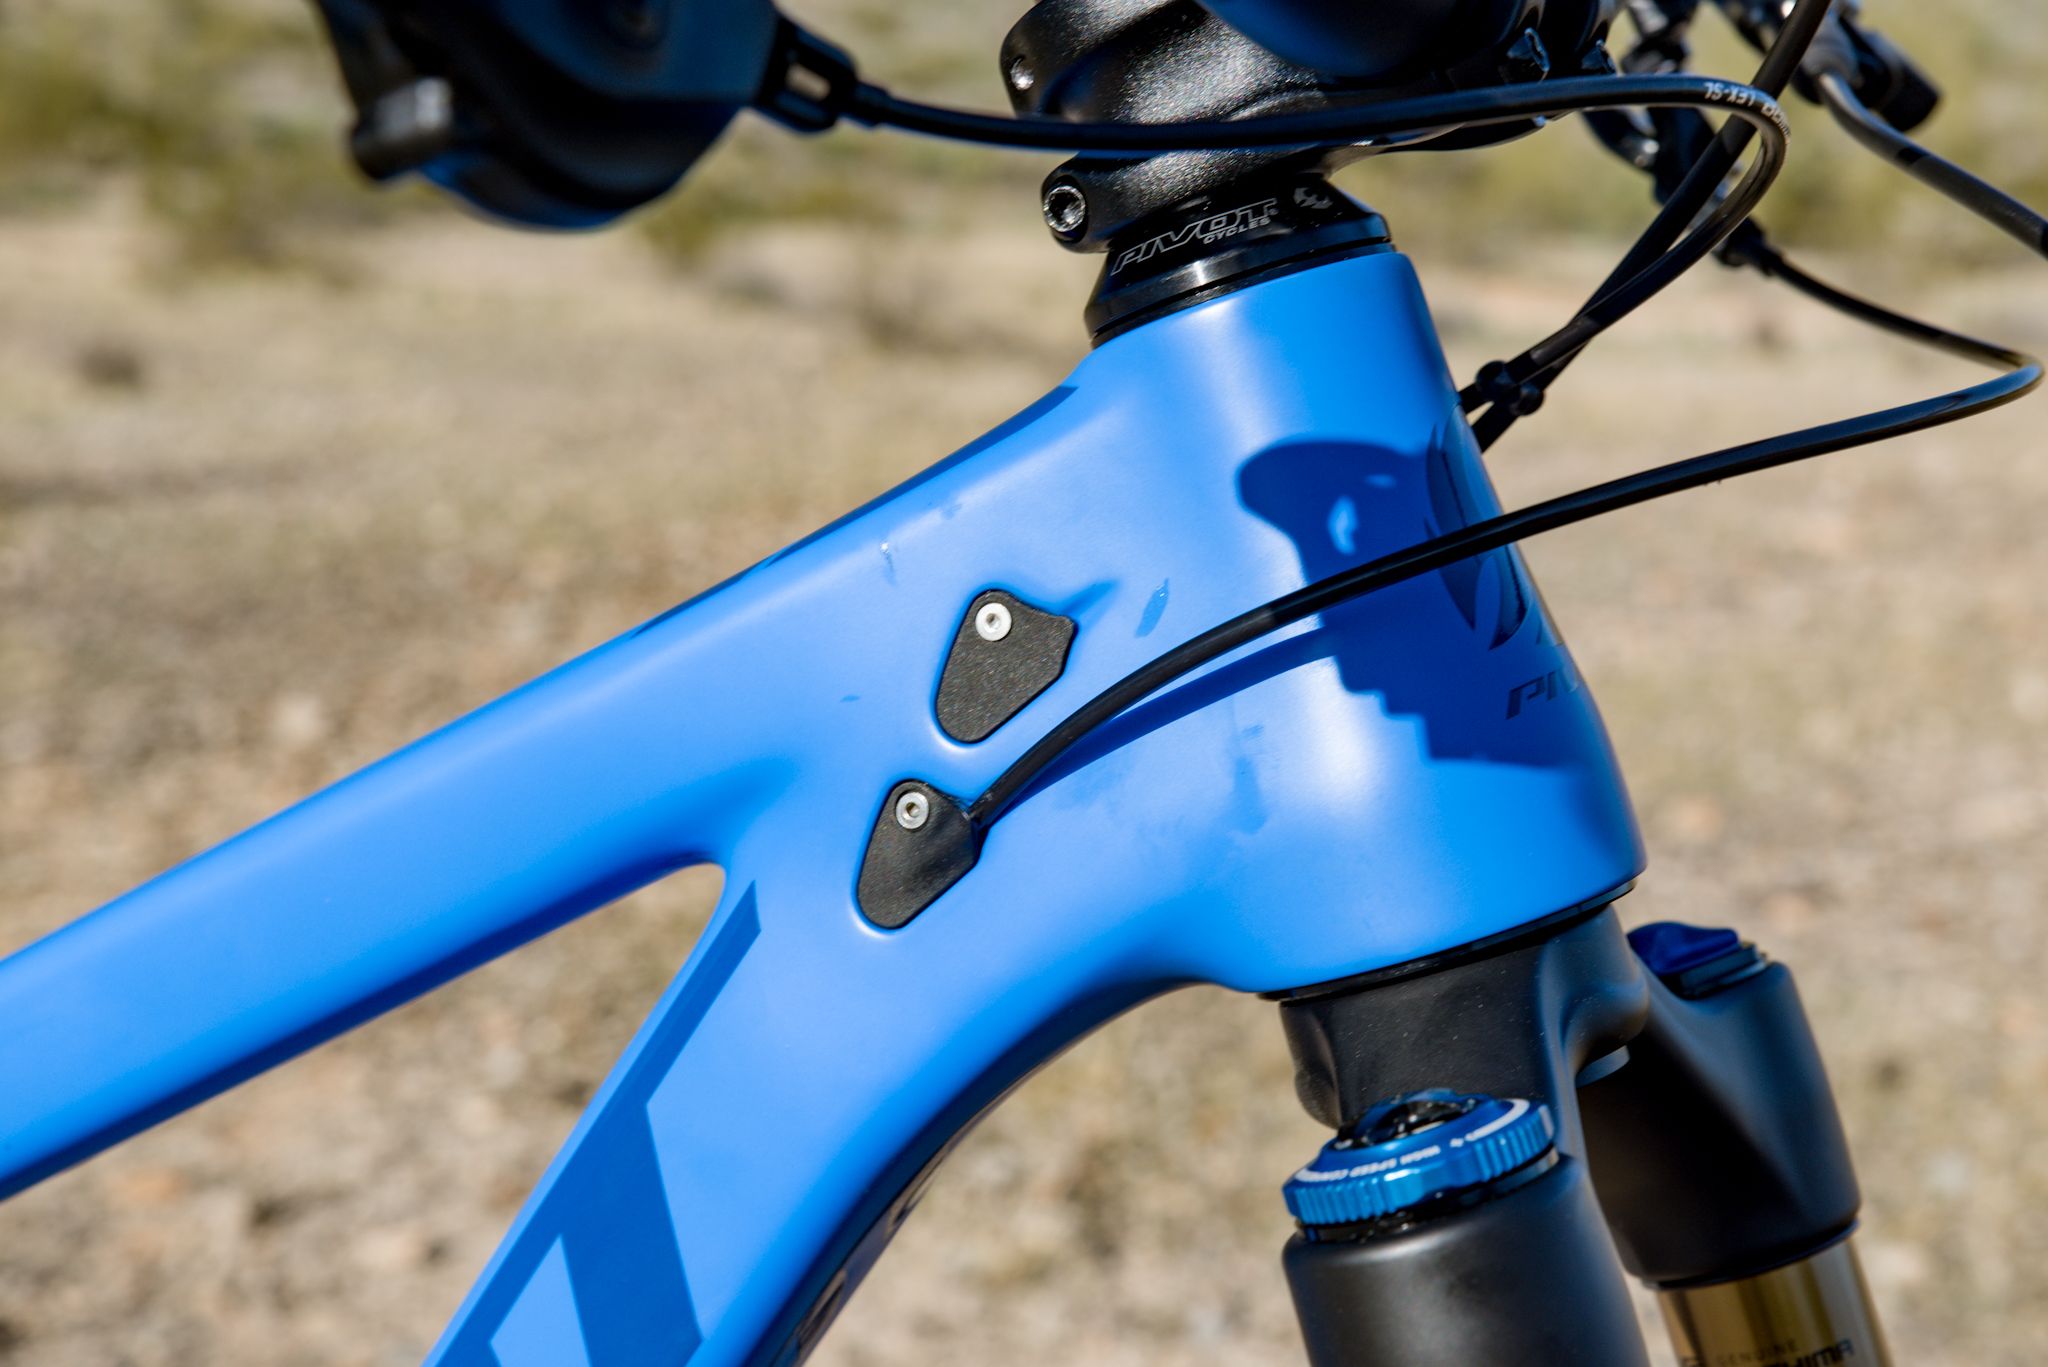 Bicycle, Bicycle part, Bicycle frame, Vehicle, Bicycle wheel, Blue, Road bicycle, Hybrid bicycle, Bicycle handlebar, Cobalt blue, 